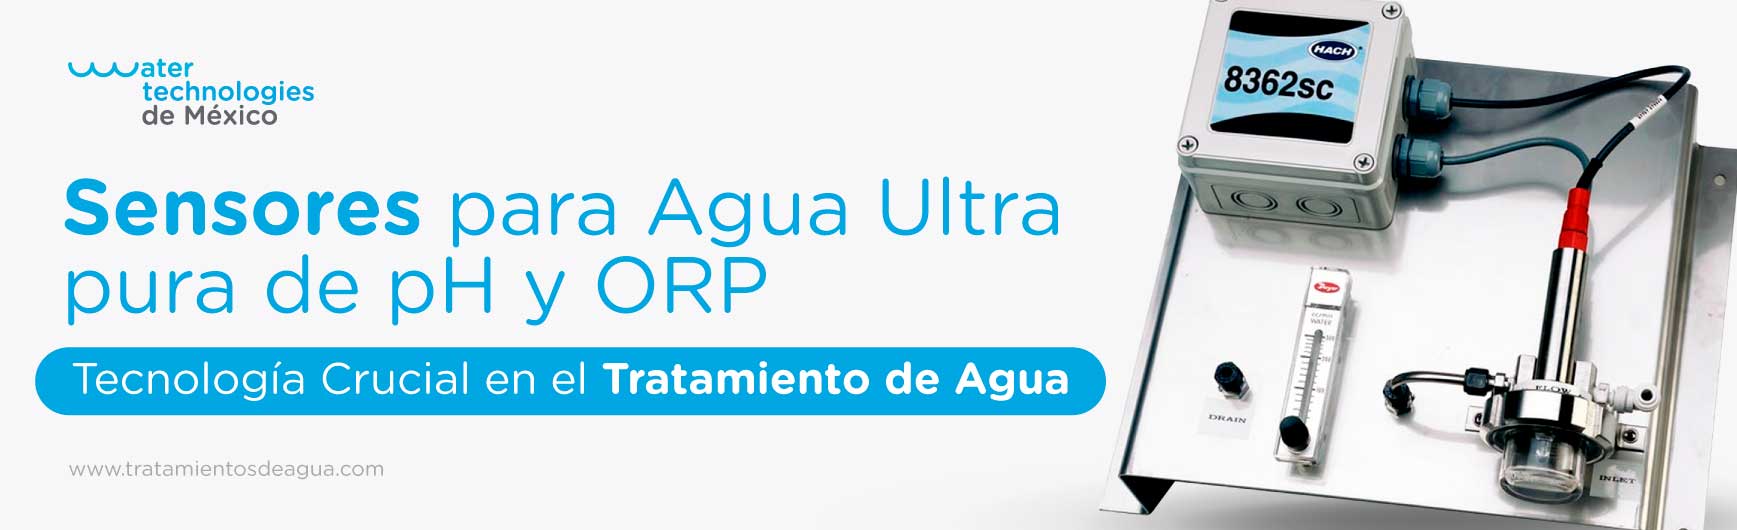 Sensores para Agua Ultra pura de pH y ORP: Tecnología Crucial en el Tratamiento de Agua